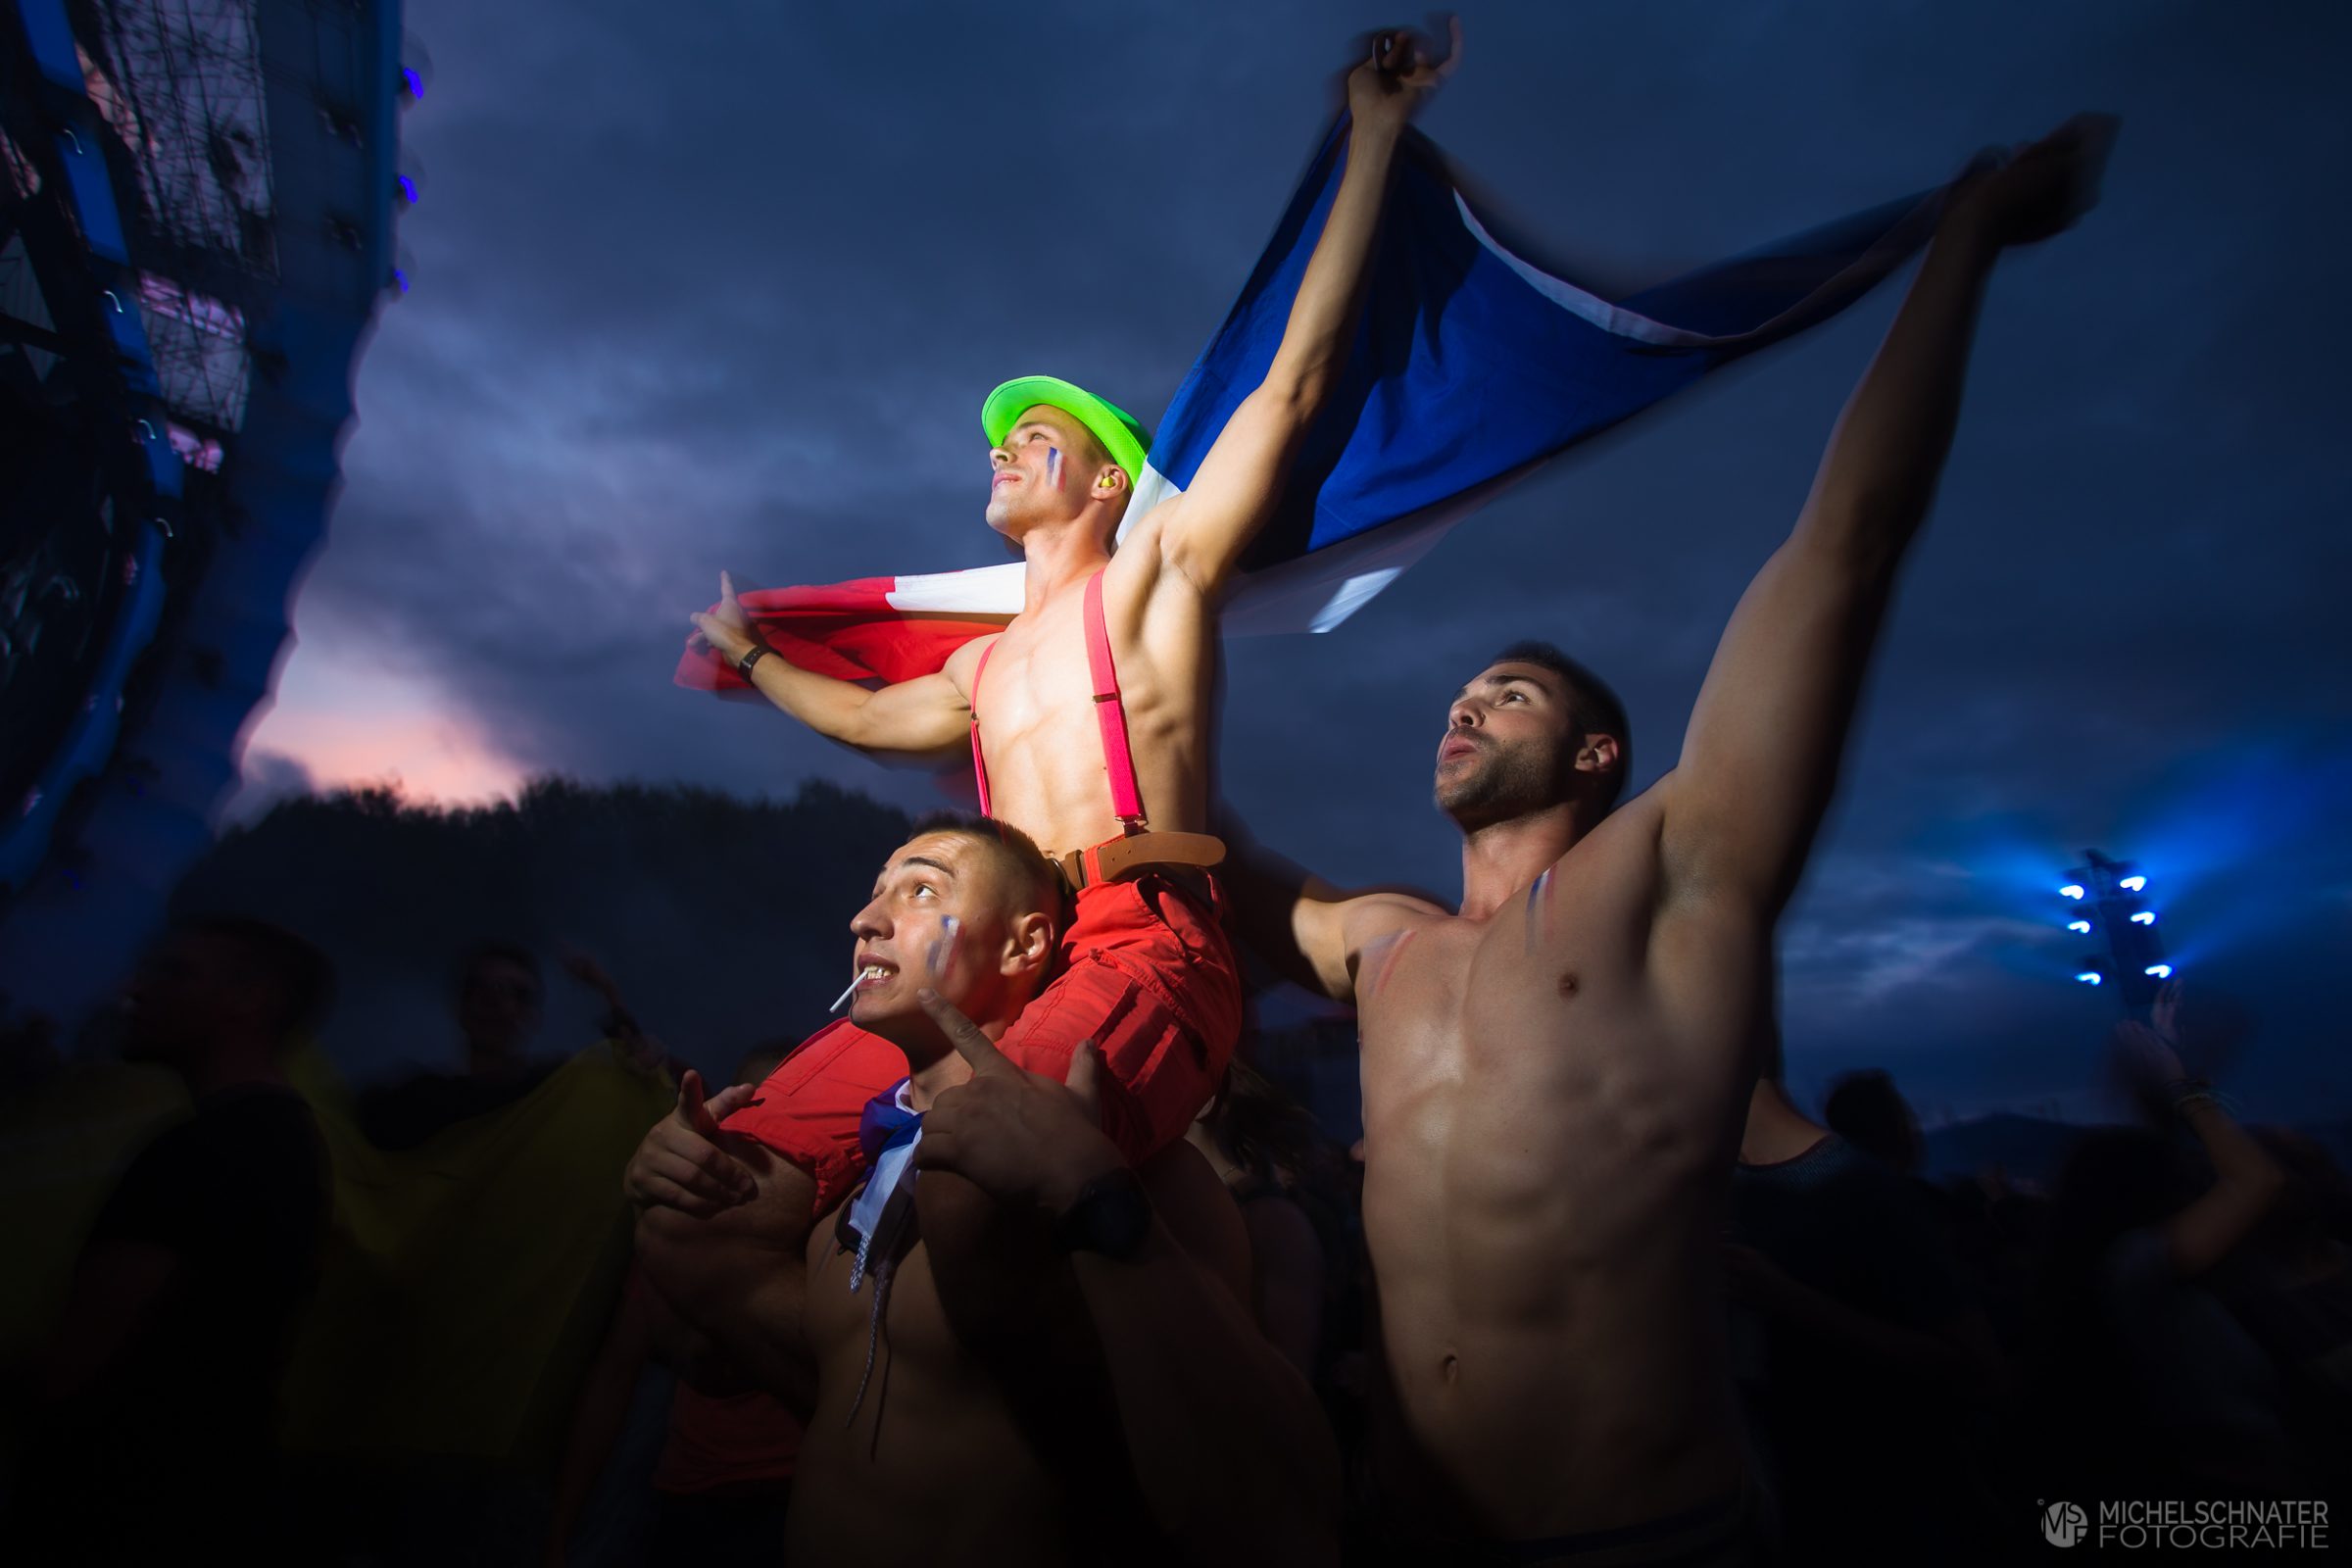 drie mannen met Franse vlag voor het podium dance valley bij avond foto gemaakt door Michel Schnater